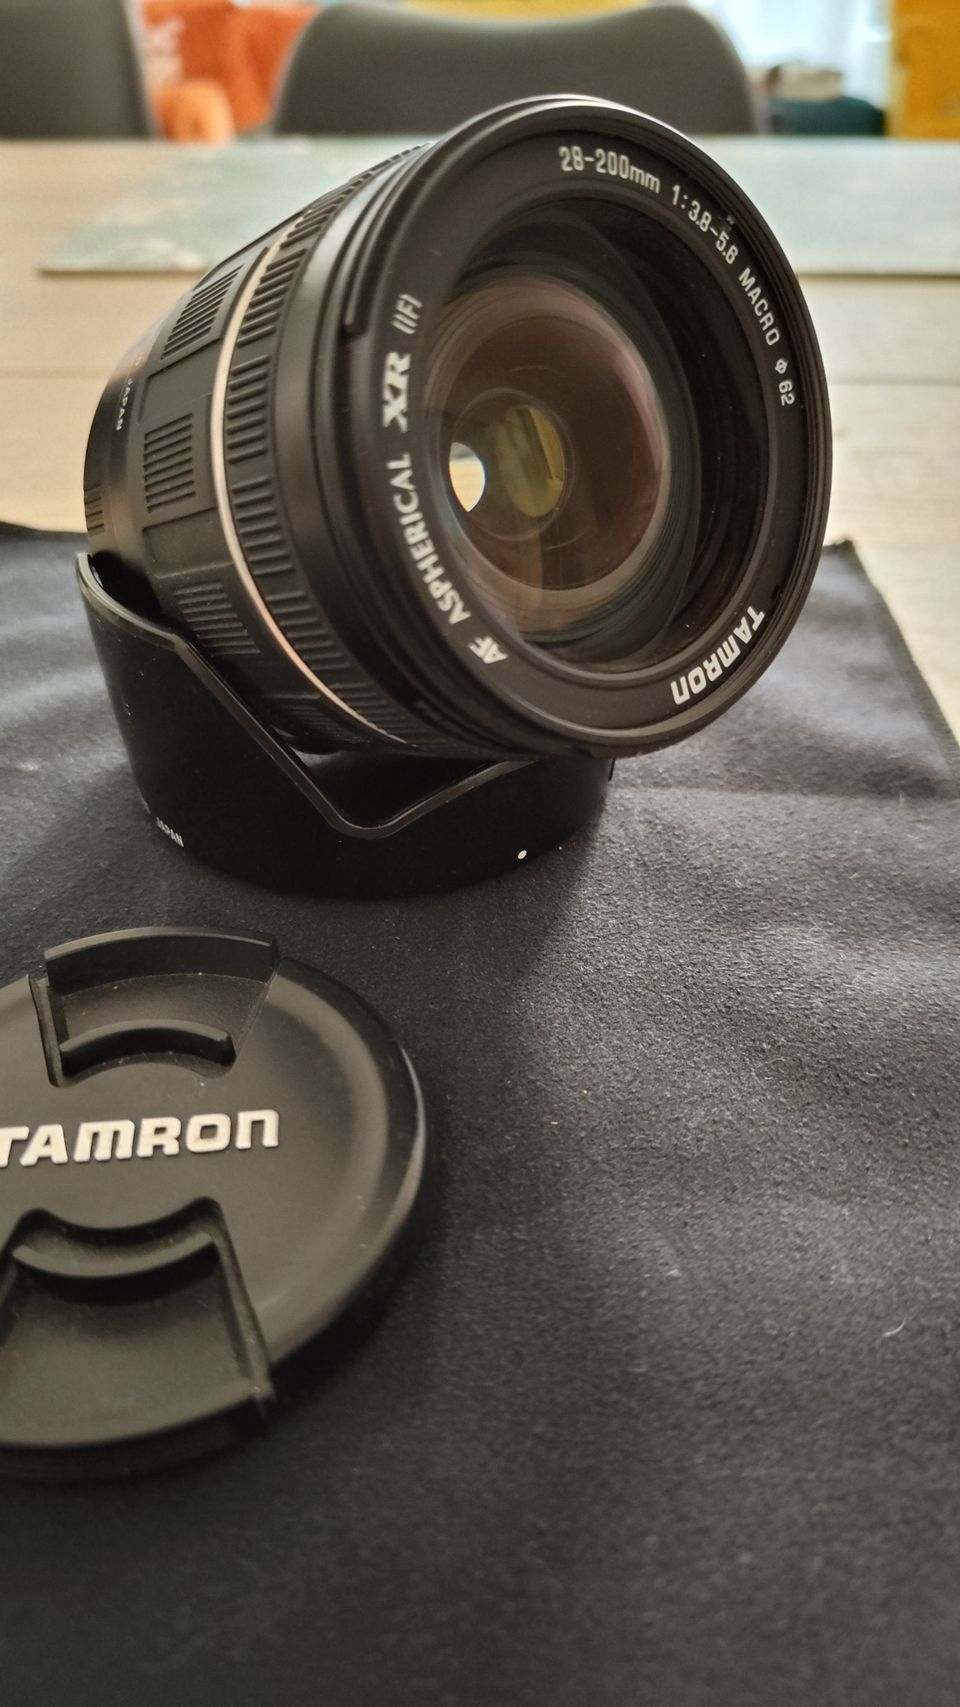 Tamron 28-200mm f3.8-5.6 Macro. EF mount